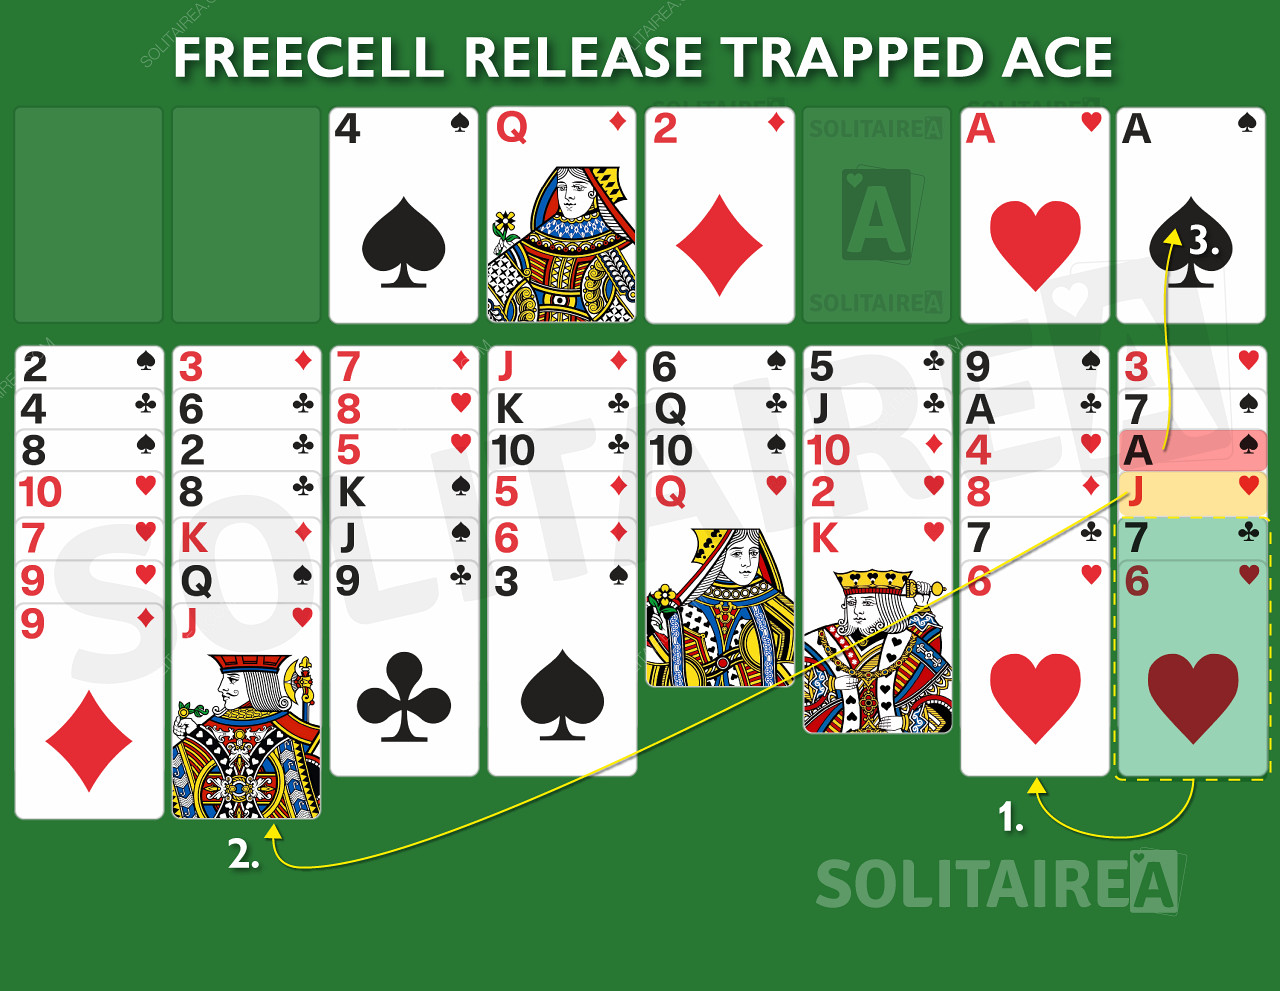 การเคลื่อนไหวขั้นสูงของ FreeCell เพื่อปลดปล่อย Ace ที่ติดอยู่!